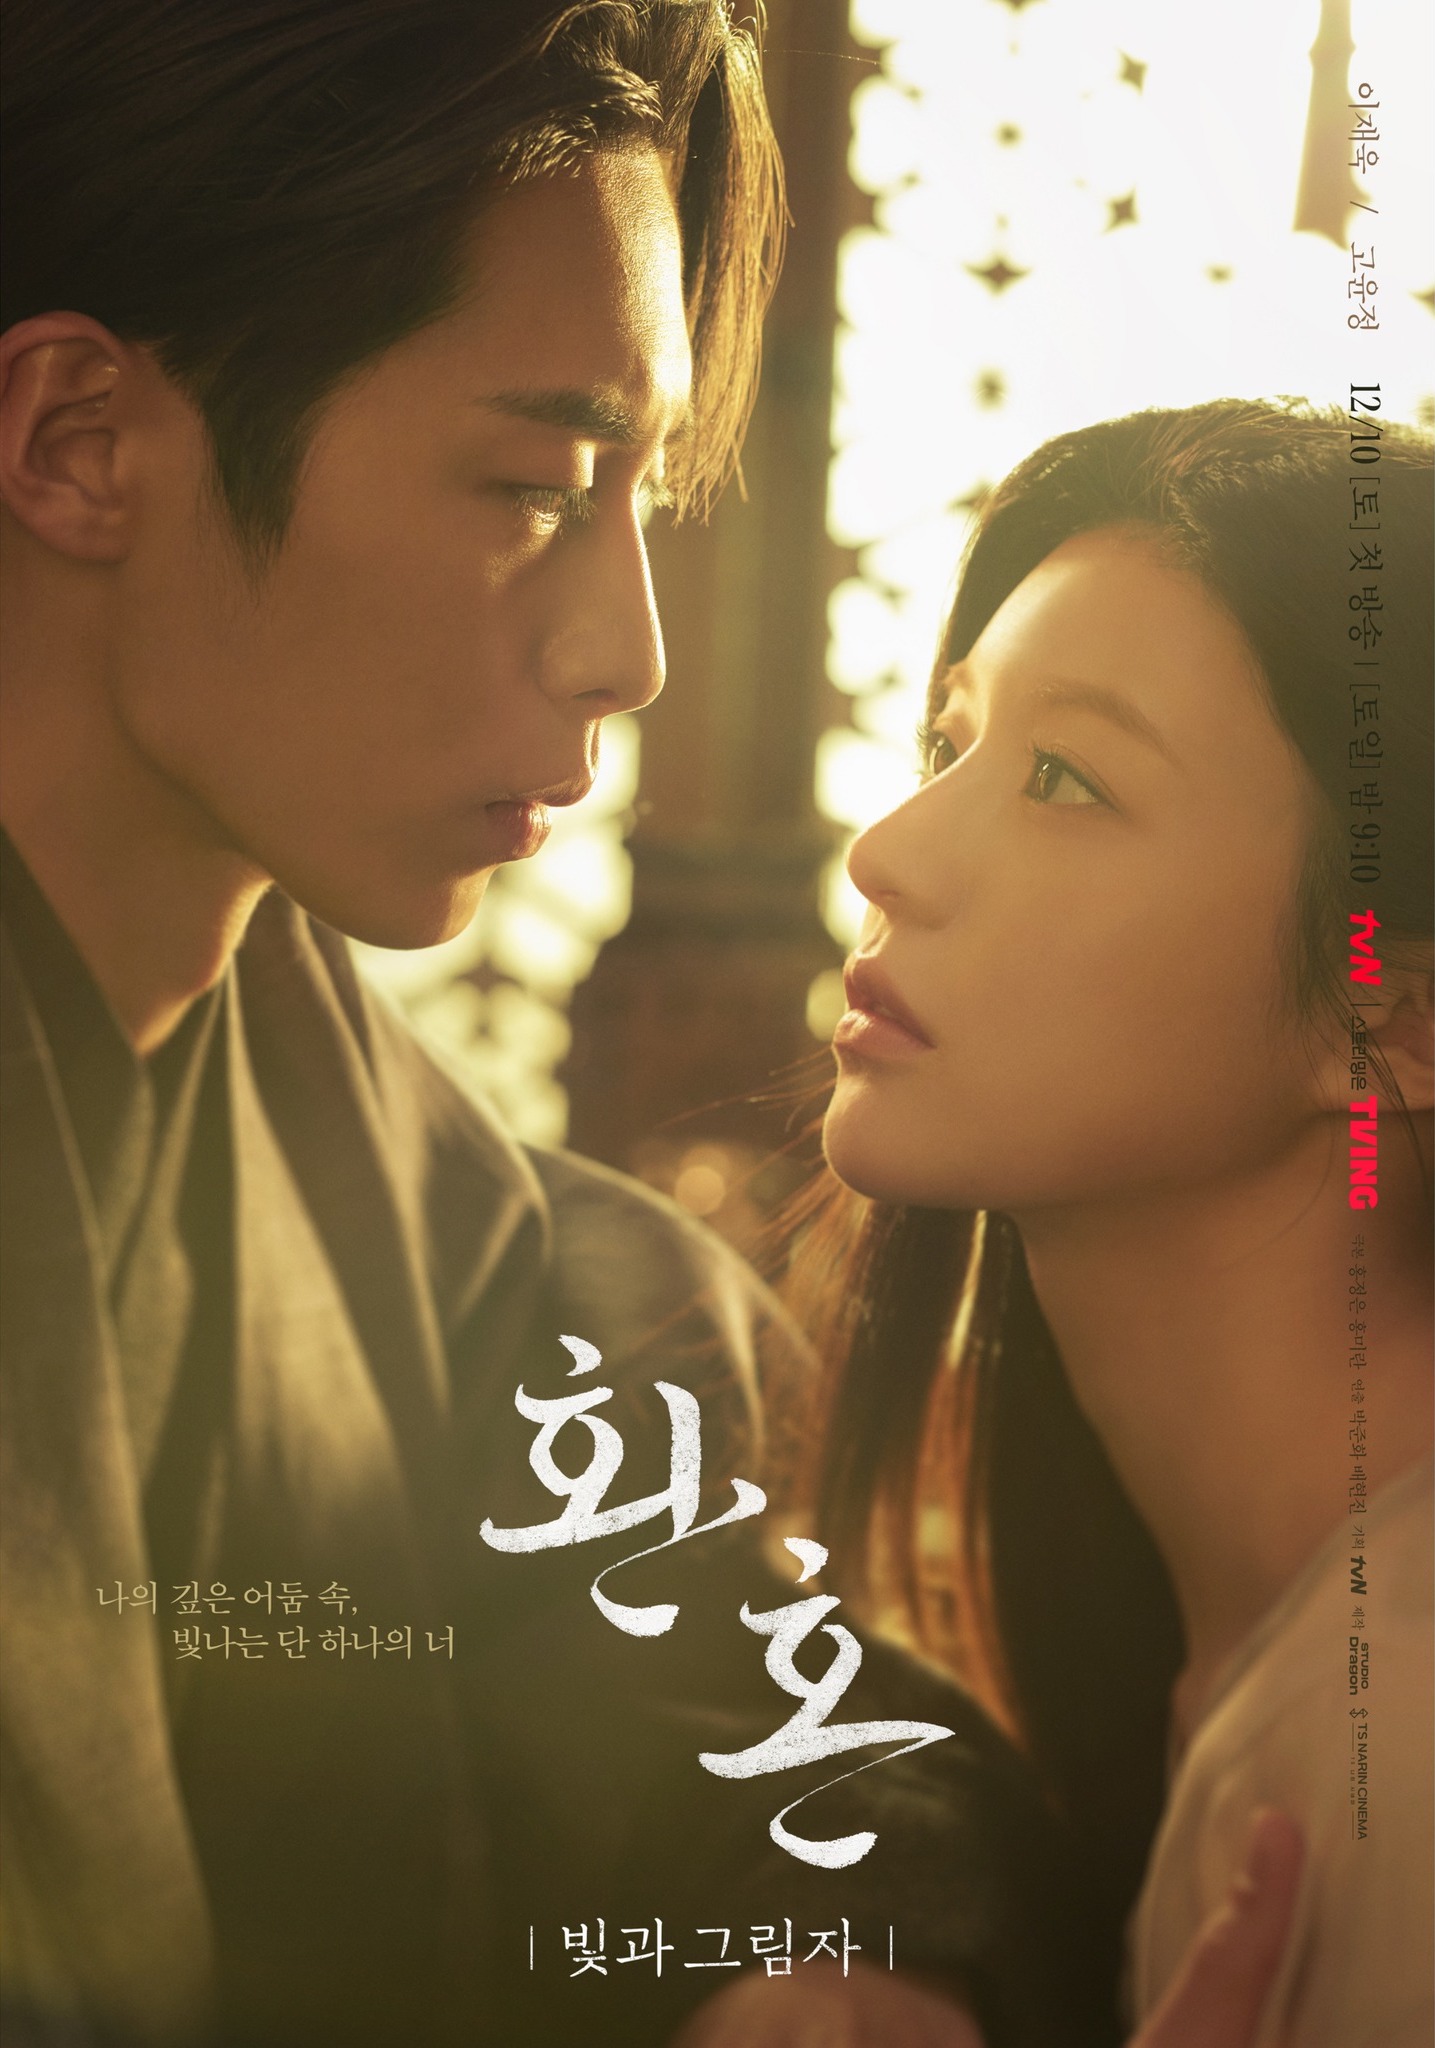 Романтические взгляды Ли Джэ Ука и Го Ён Чжон говорят больше, чем слова на постере "Алхимия душ, часть 2"